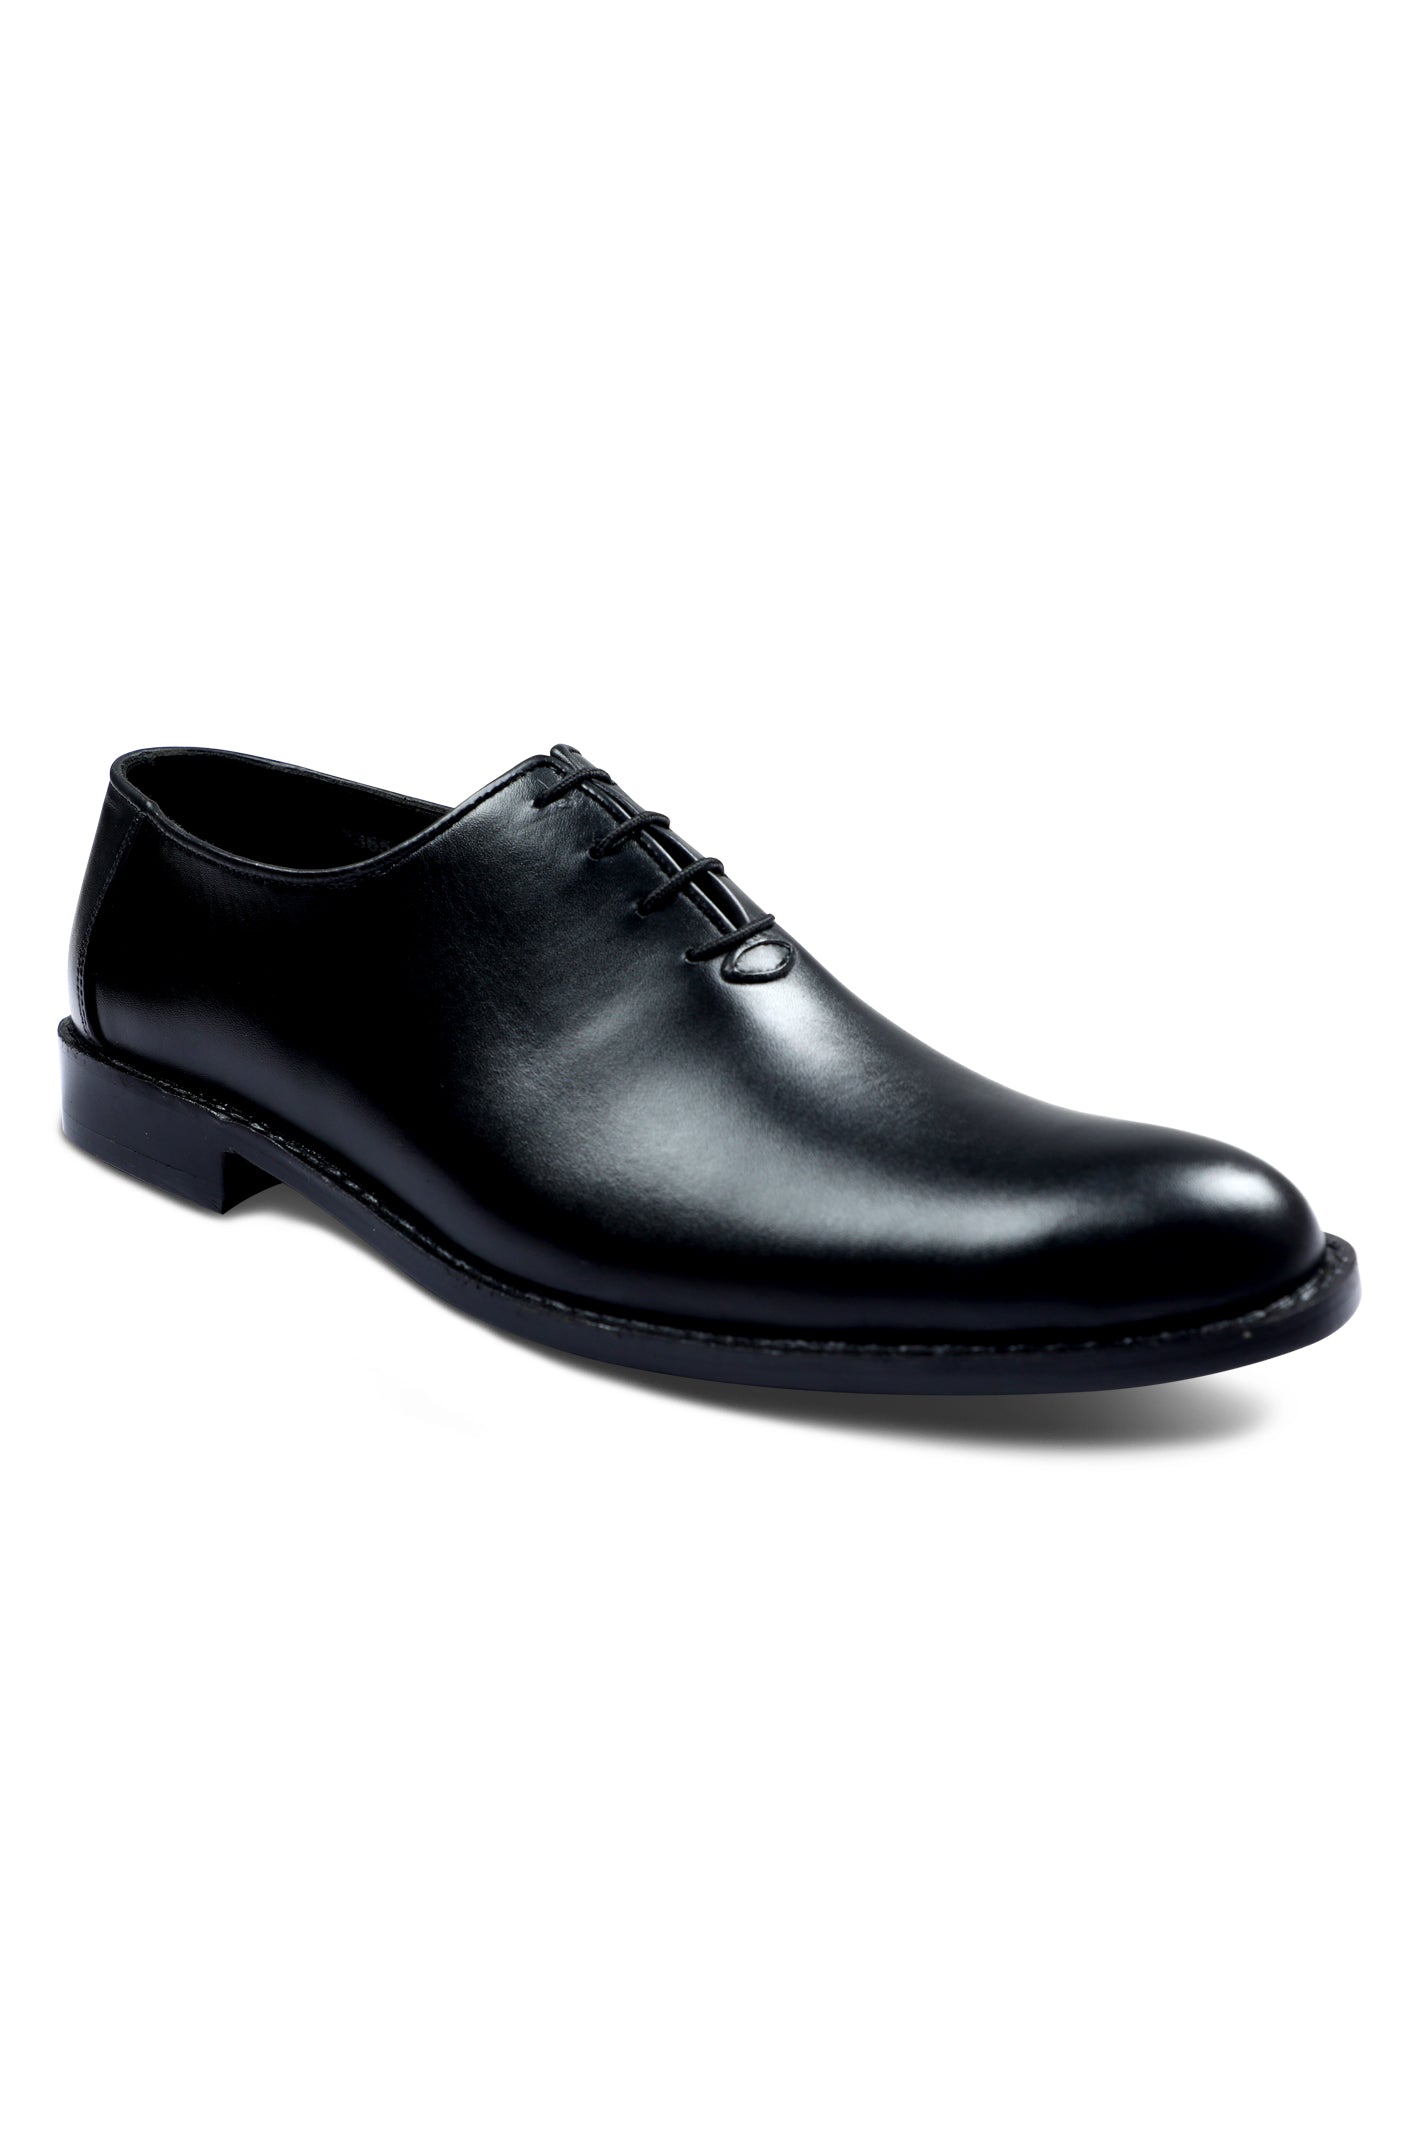 Formal Shoes For Men in Black SKU: SMF-0162-BLACK - Diners